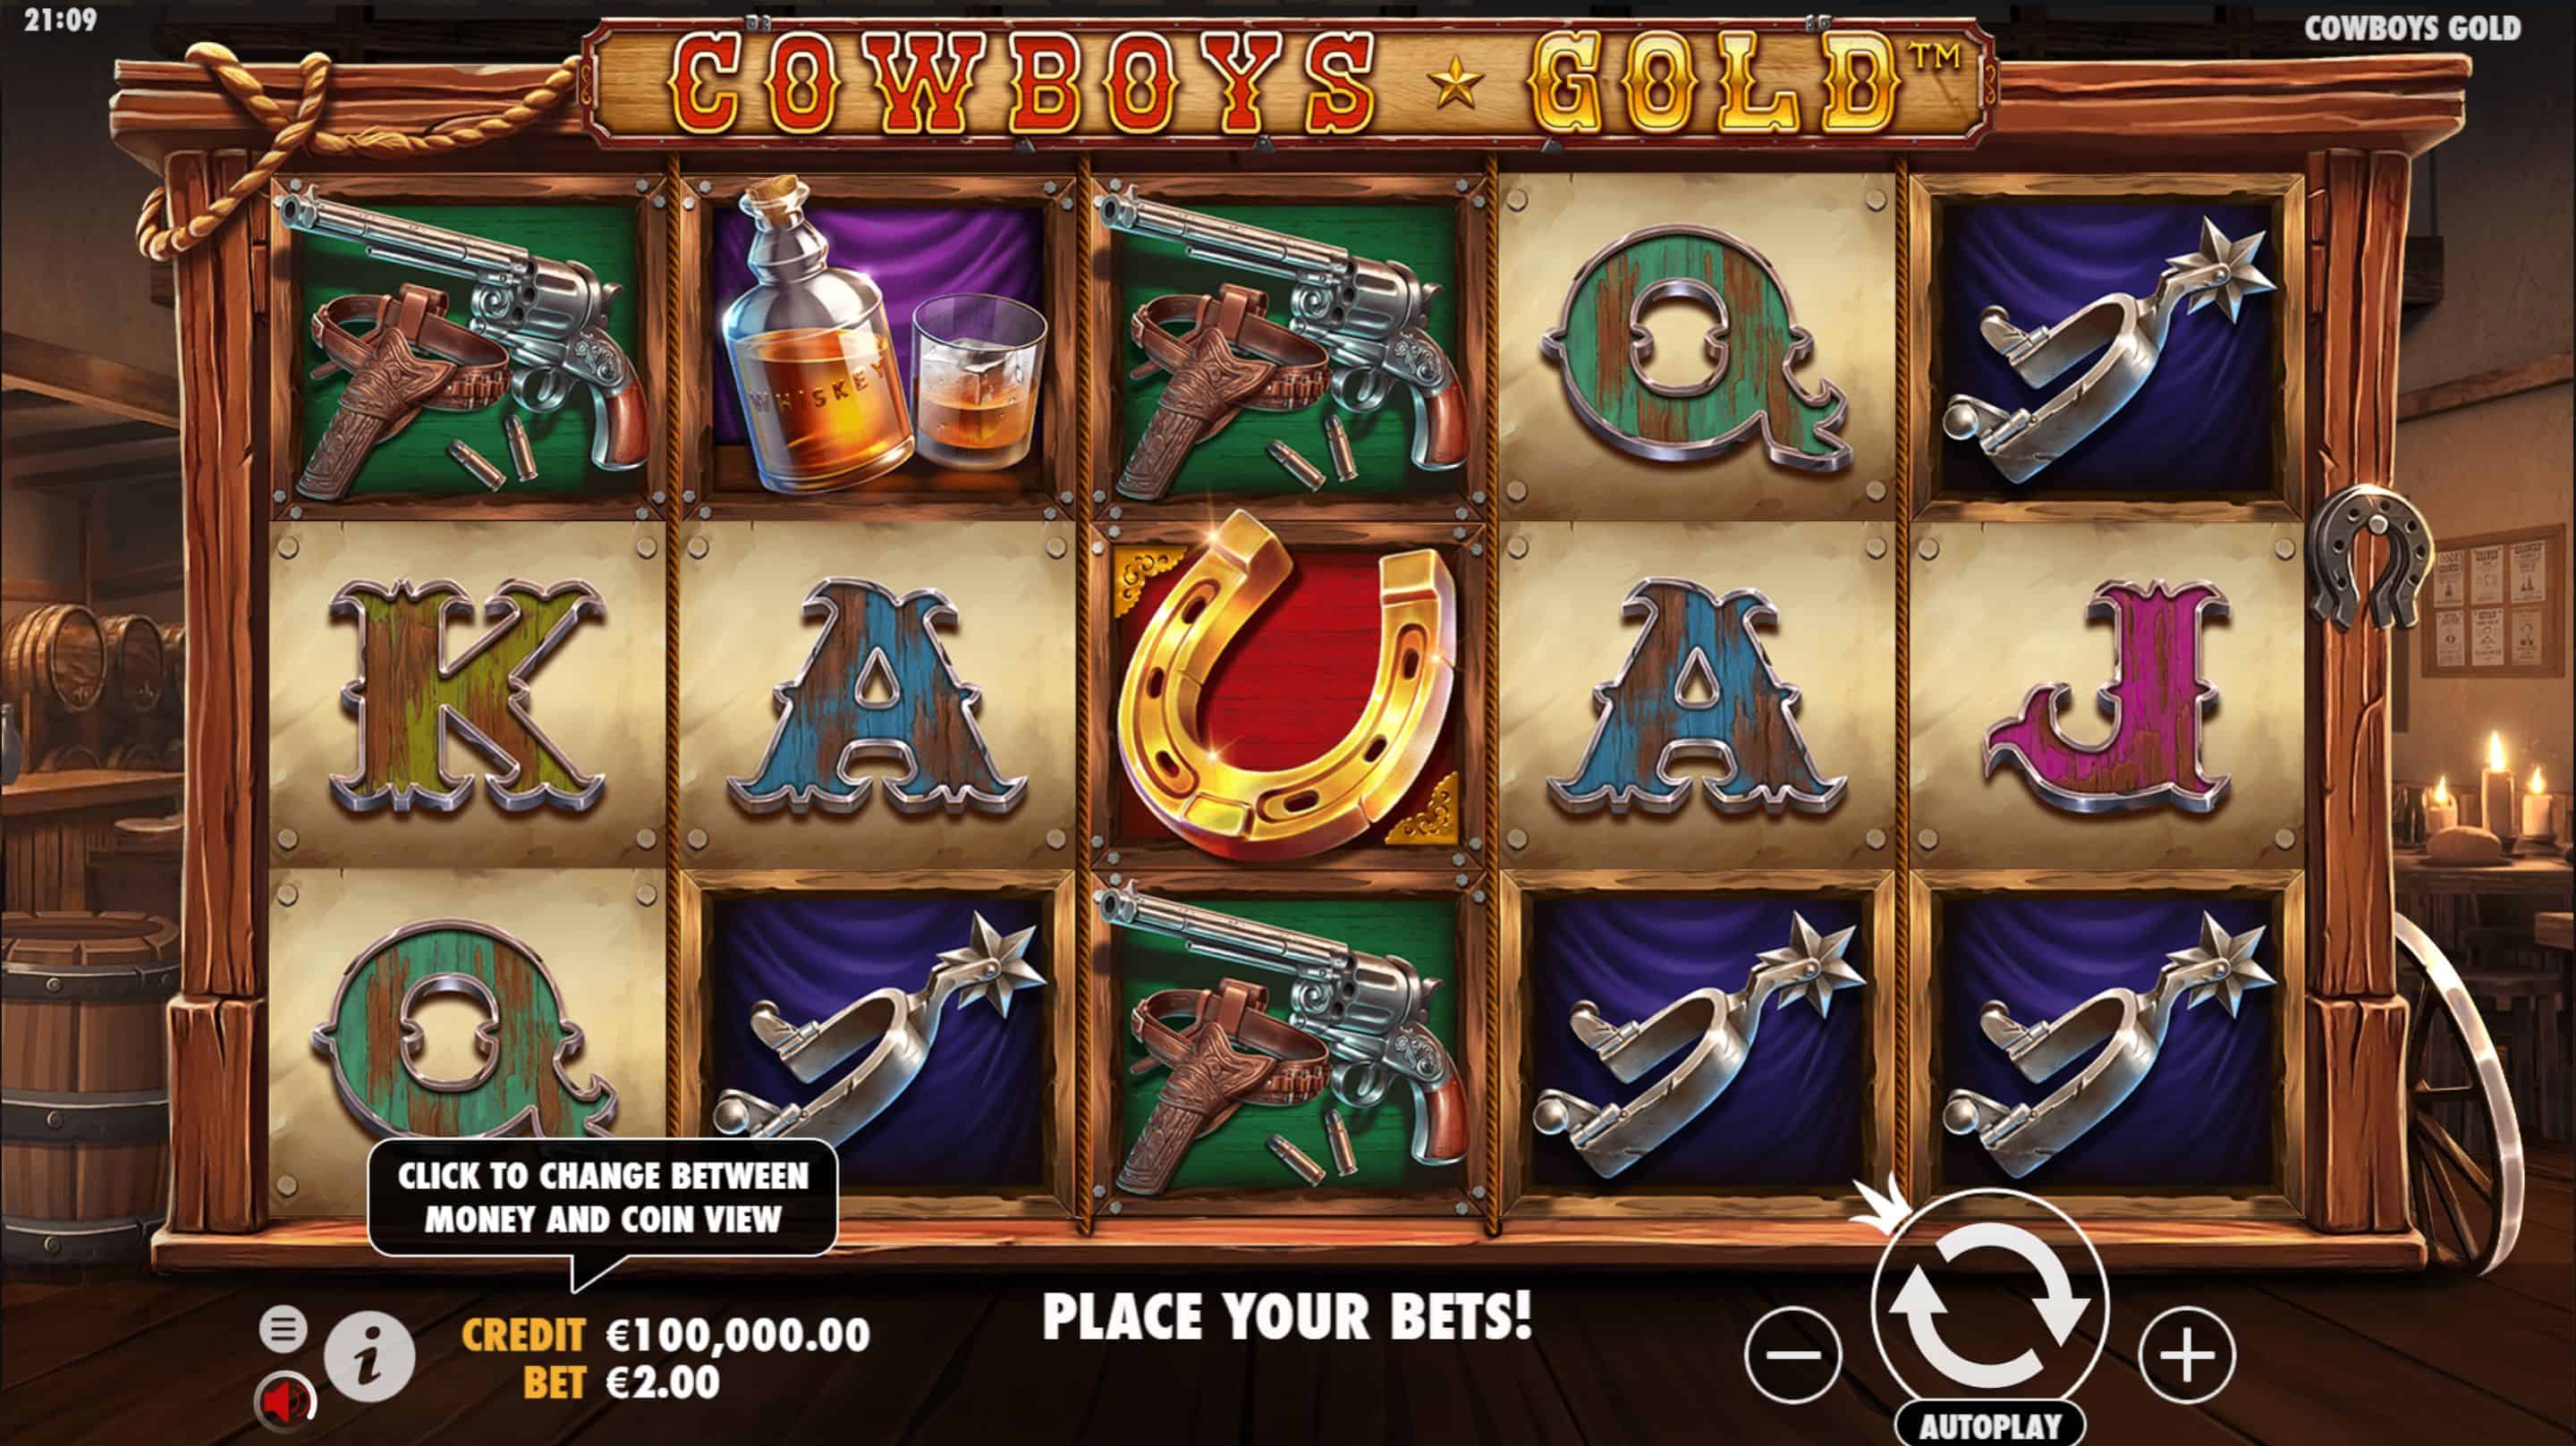 Cowboys Gold Slot Game Free Play at Casino Ireland 01